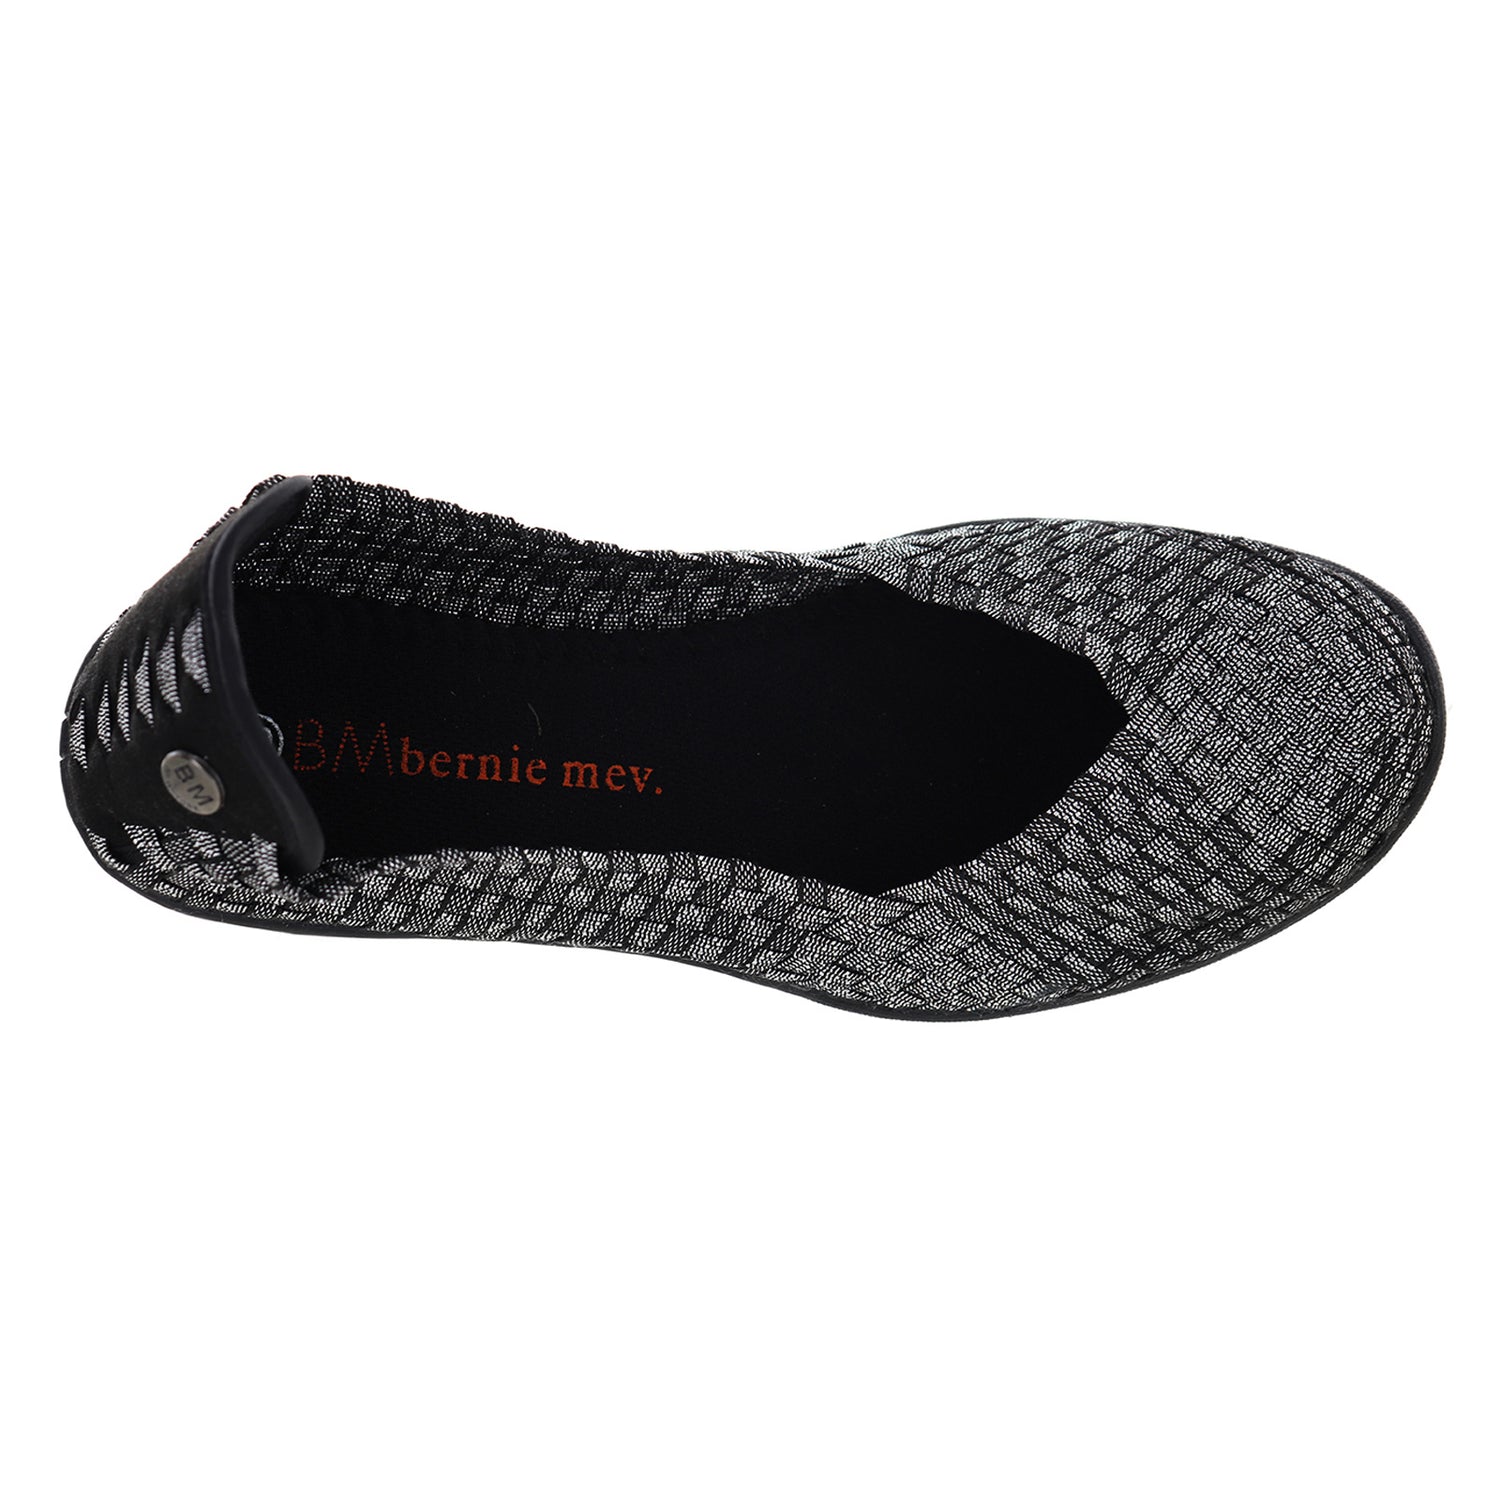 Peltz Shoes  Women's Bernie Mev Catwalk Slip-On BLACK SHIMMER CATWALK BLKSHIM